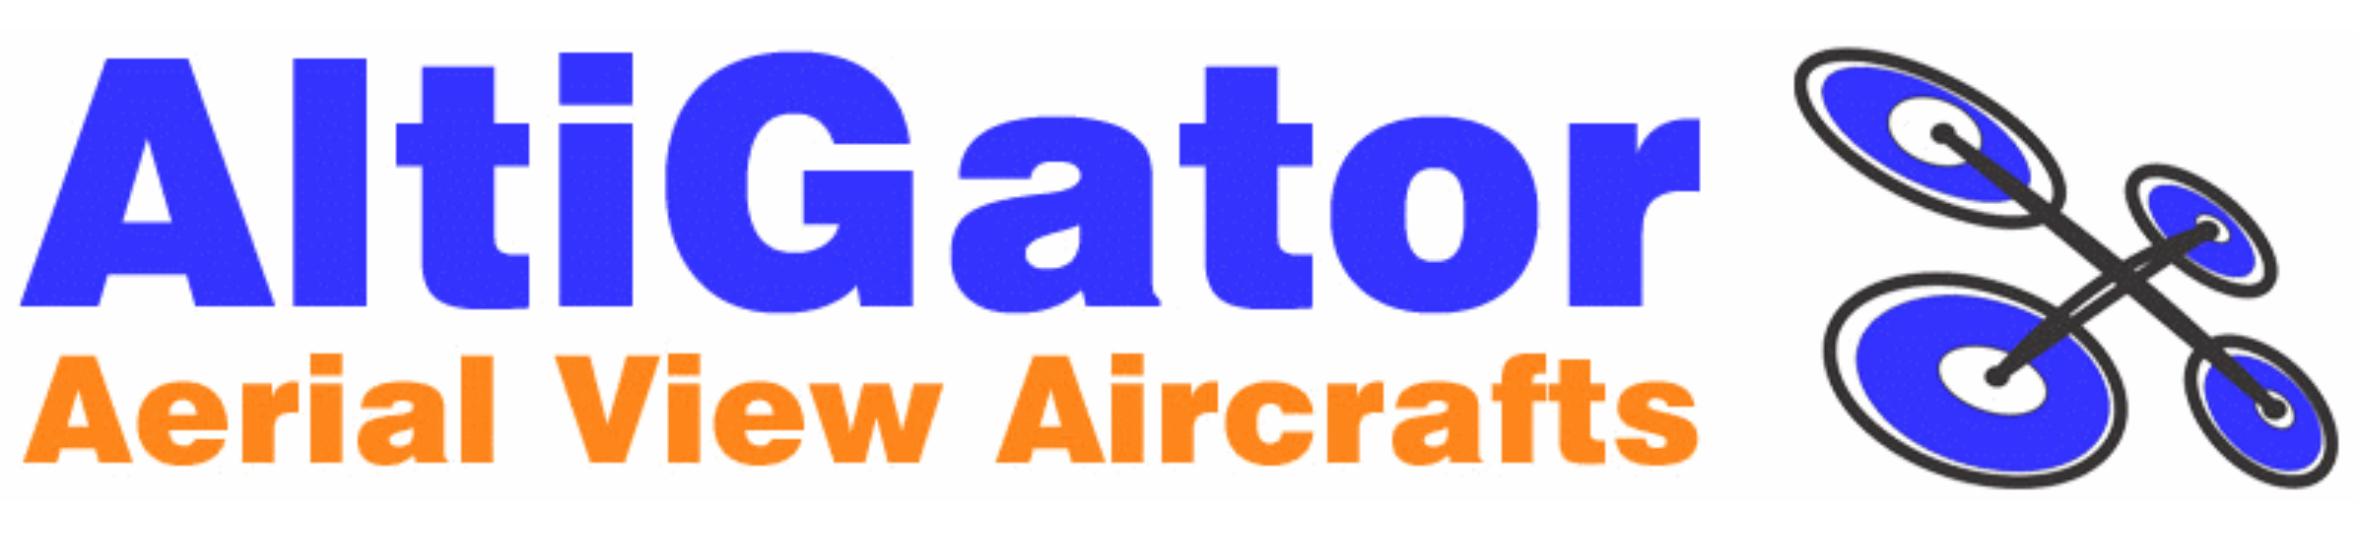 altigator-logo.png